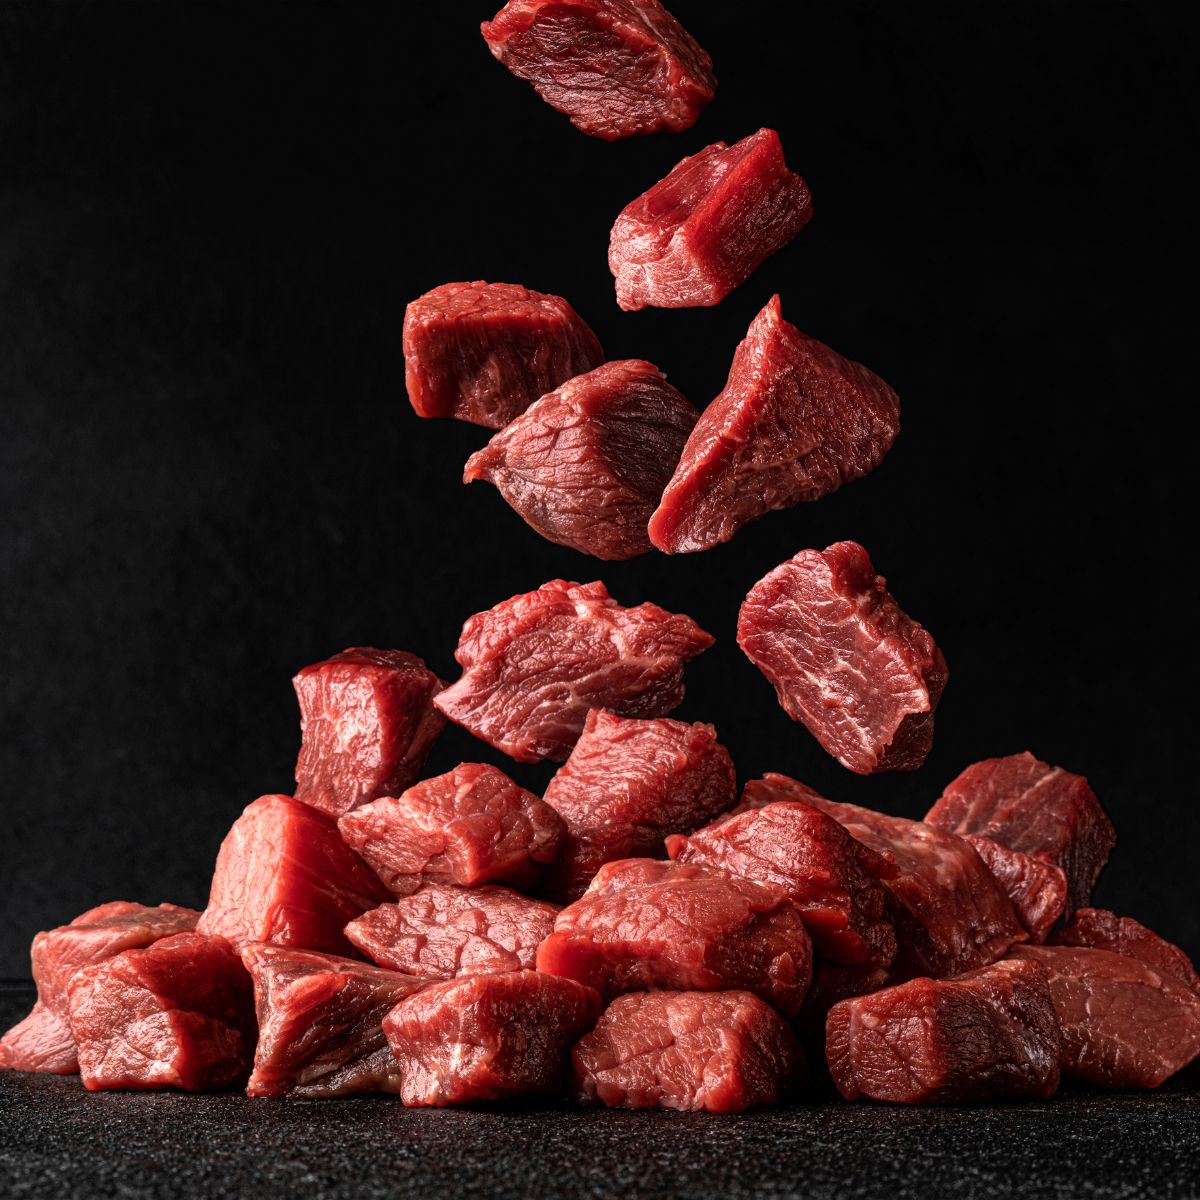 New Zealand Premium Grass-Fed Tenderloin Cubes | MeatKing.hk